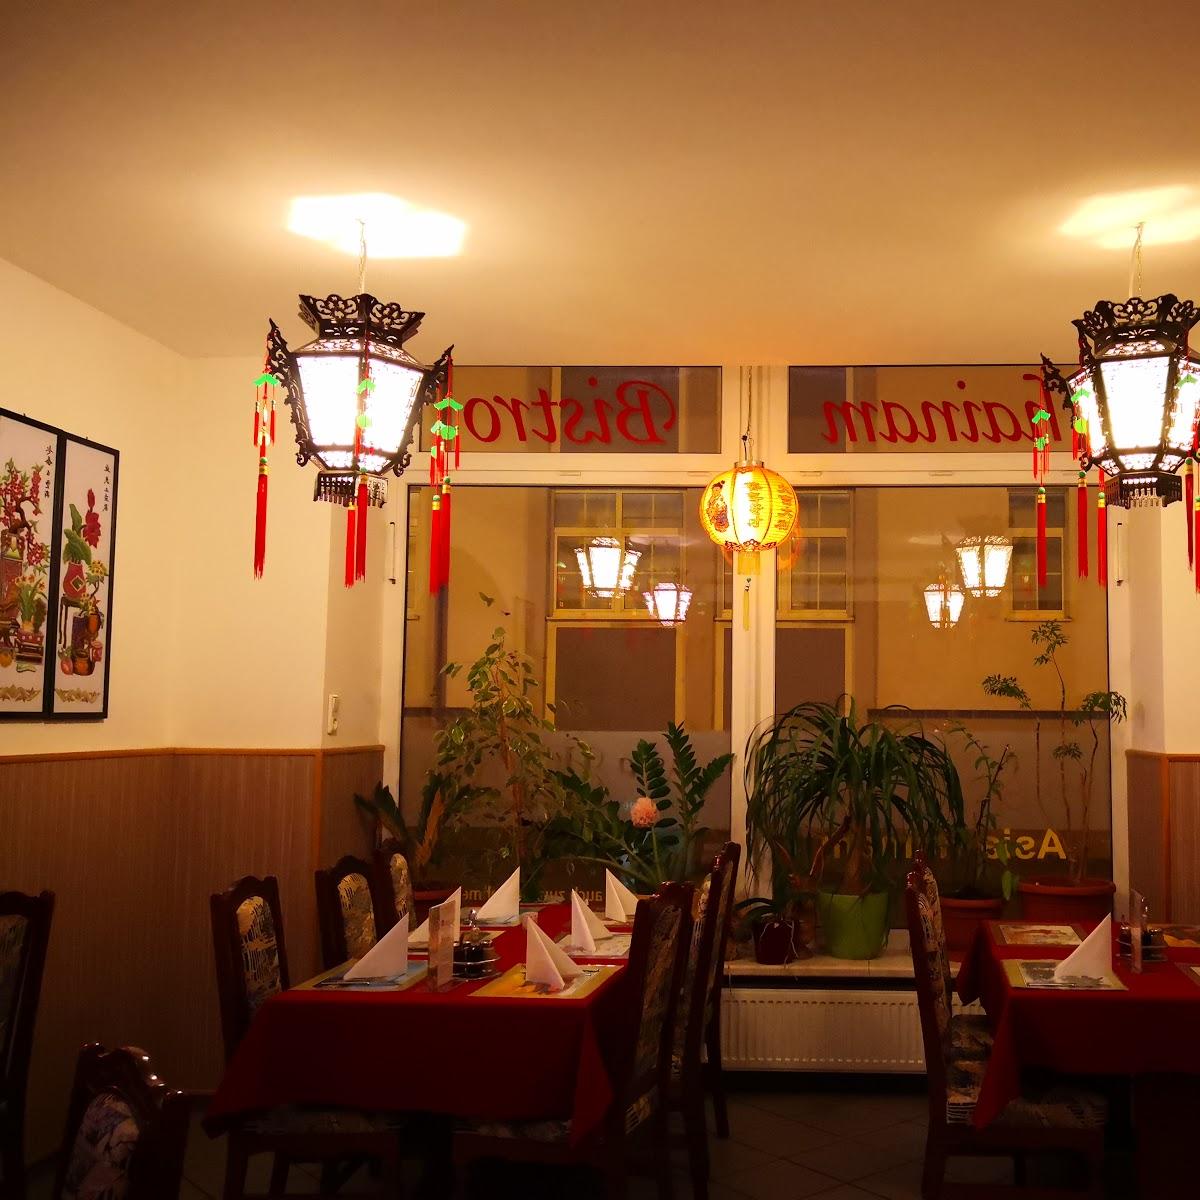 Restaurant "China Bistro" in Schleiz